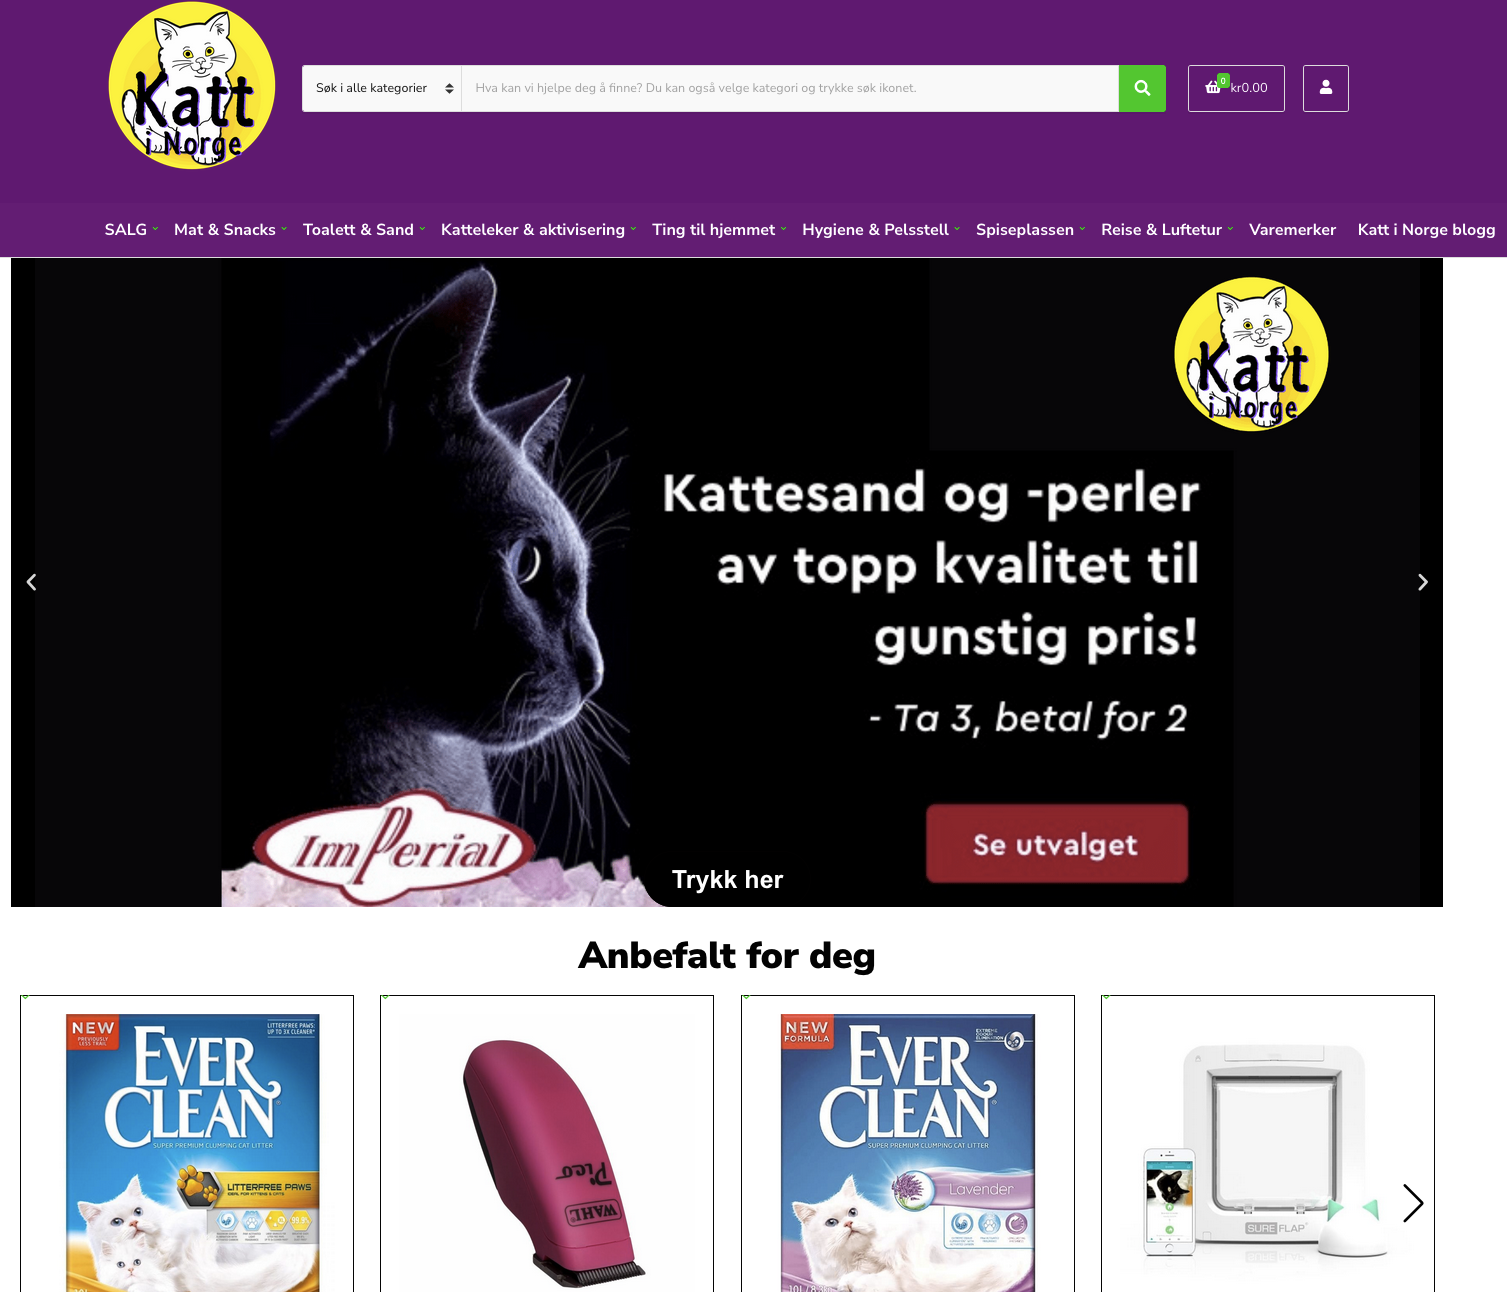 Omtale og erfaring med Katt i Norge